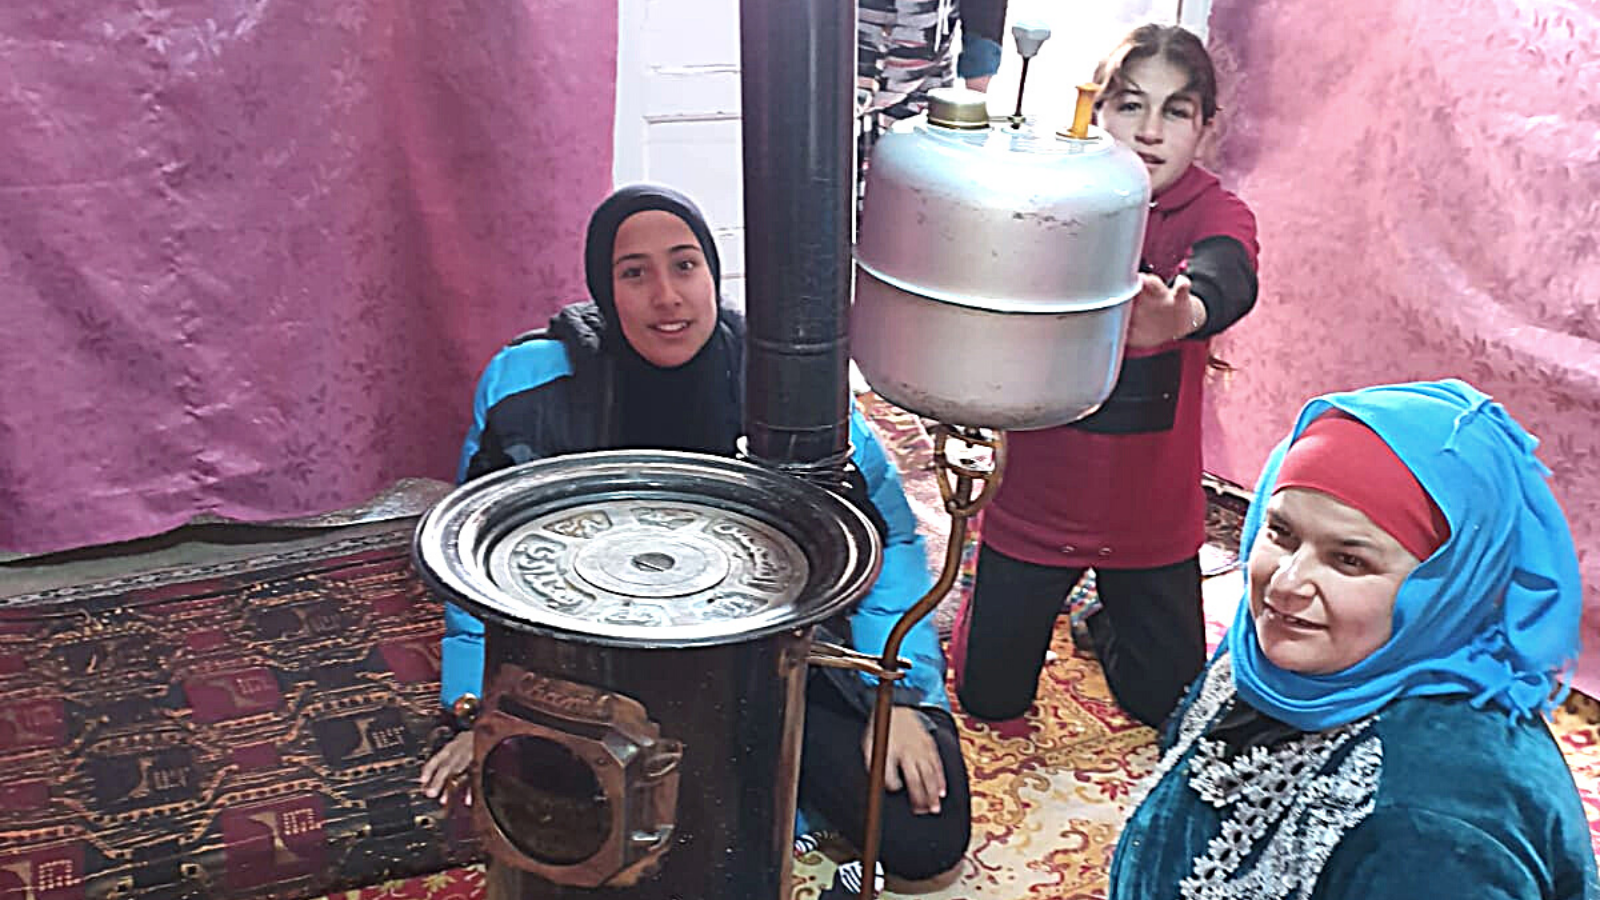 Llegó el calor, en pleno invierno, a las tiendas de refugiados sirios